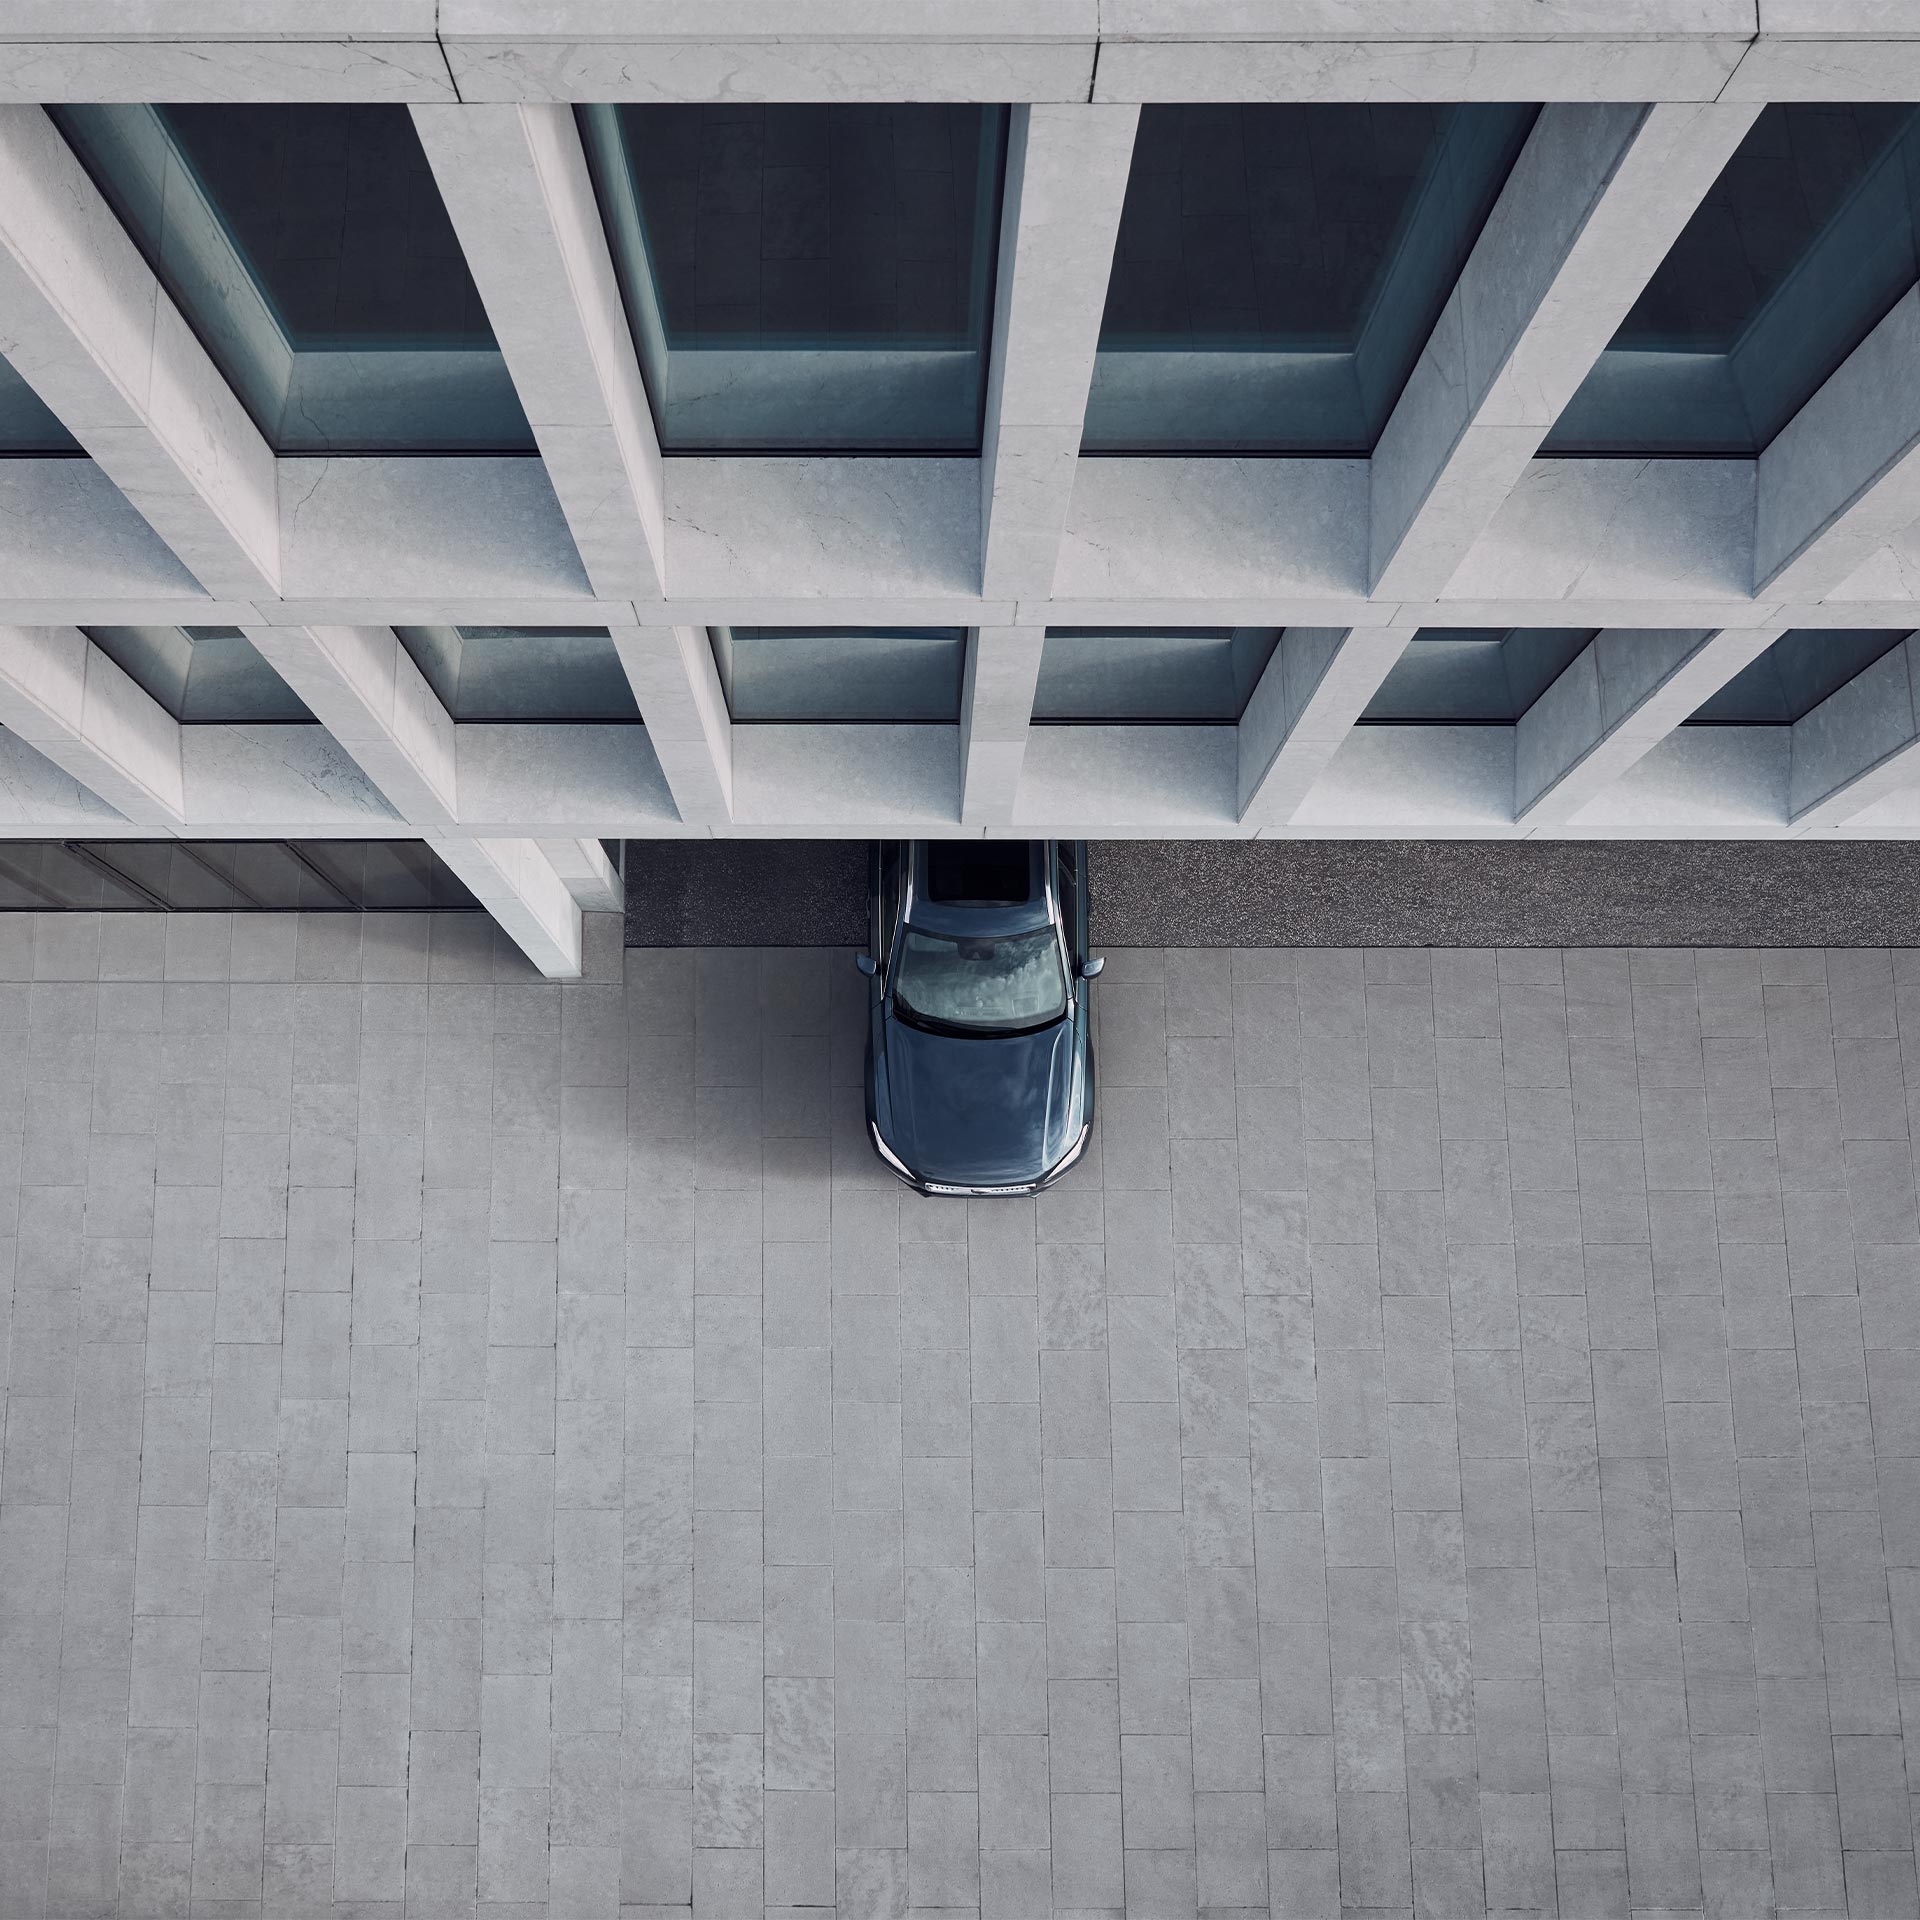 La elegante mitad delantera del SUV semihíbrido Volvo XC90 visto desde arriba.